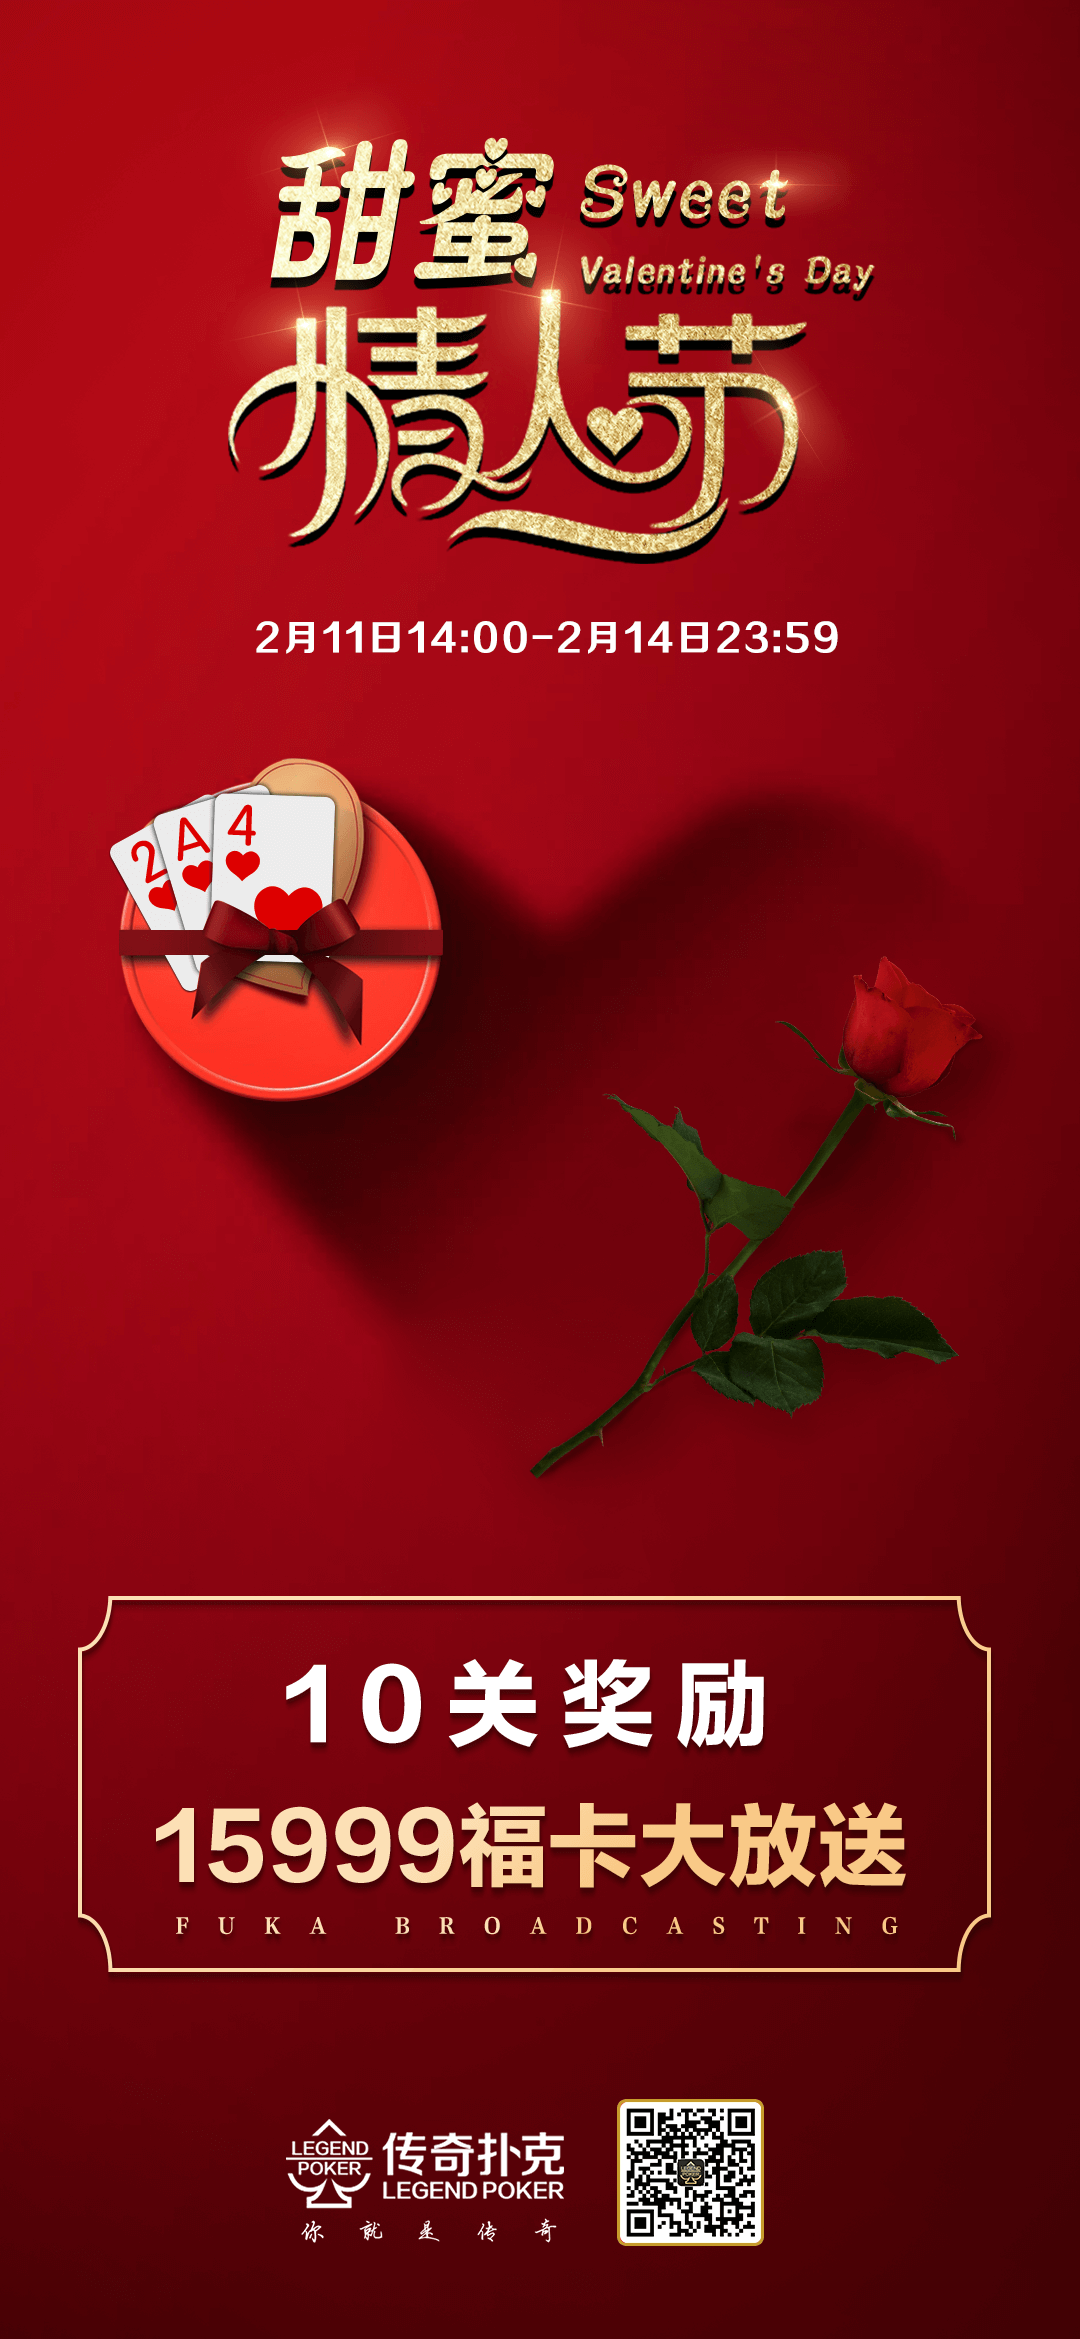 甜蜜情人节传奇扑克APP送福卡兑甜蜜好礼